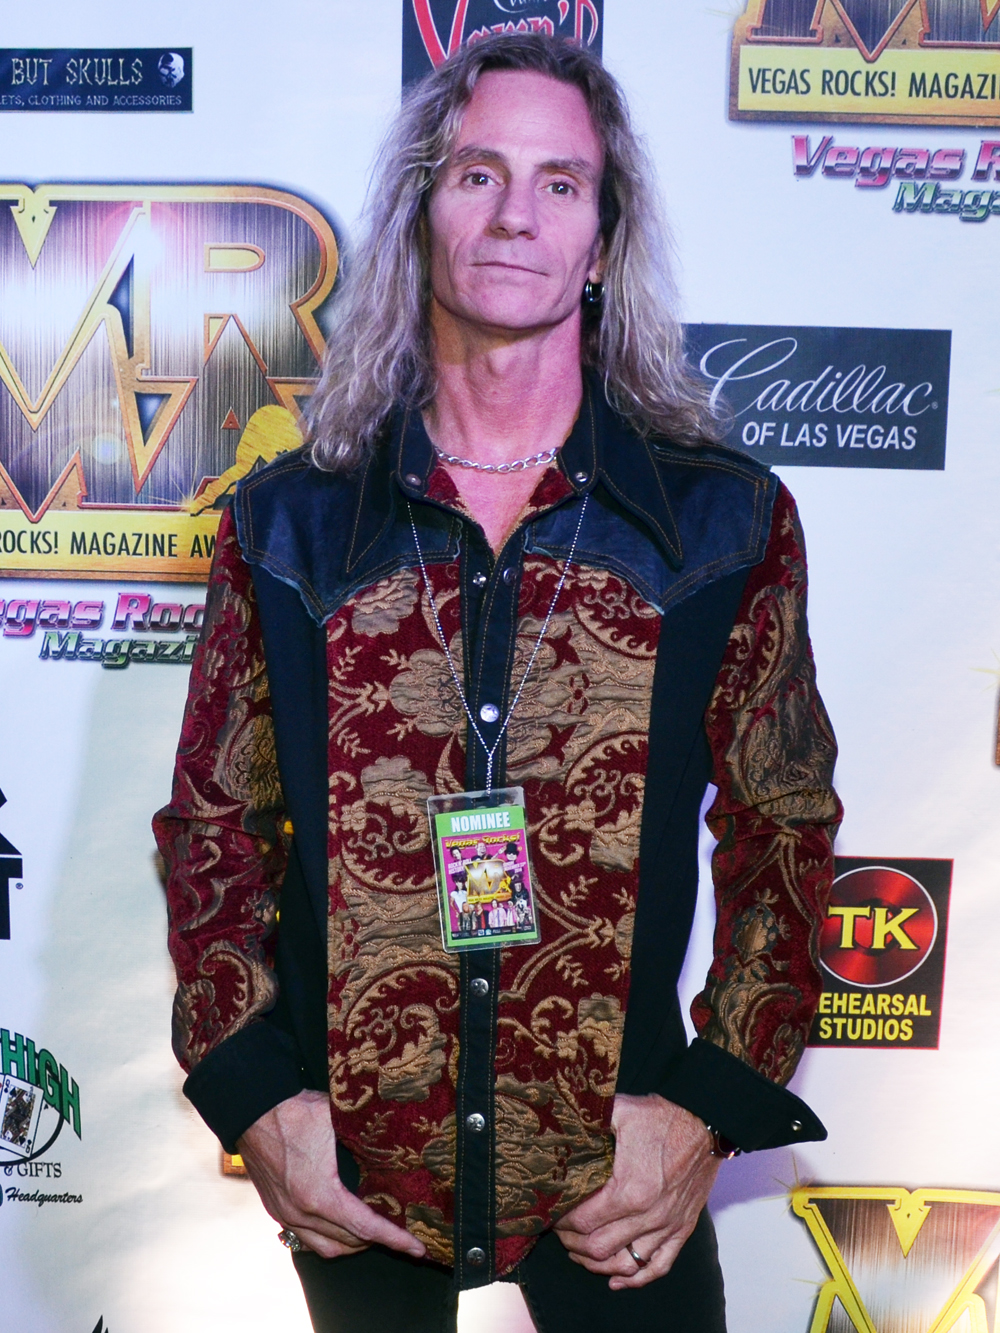 Joey Grillow - Rebel Soul - Vegas Rocks Magazine Music Awards 2014 photo credit Stephen Thorburn 63728